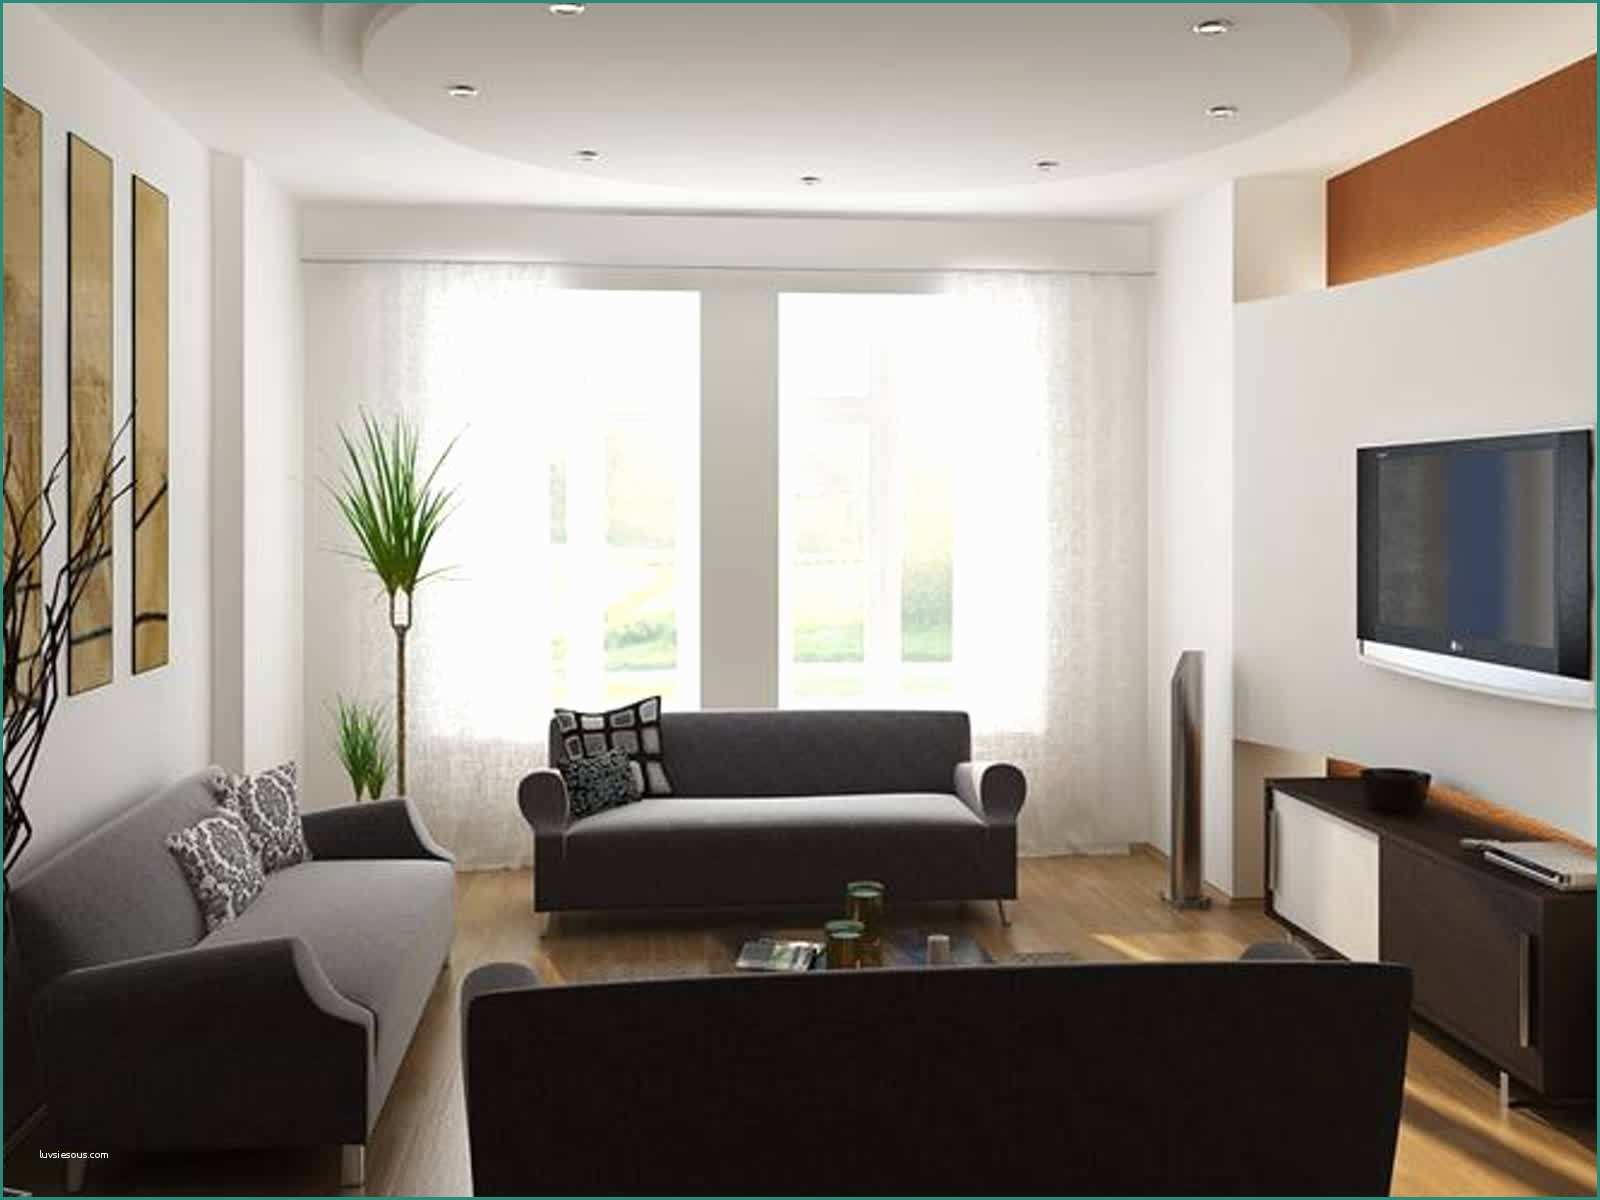 Idee Arredamento Moderno E Idee Per Arredare Il soggiorno Cheap soggiorno Idee Per Parete